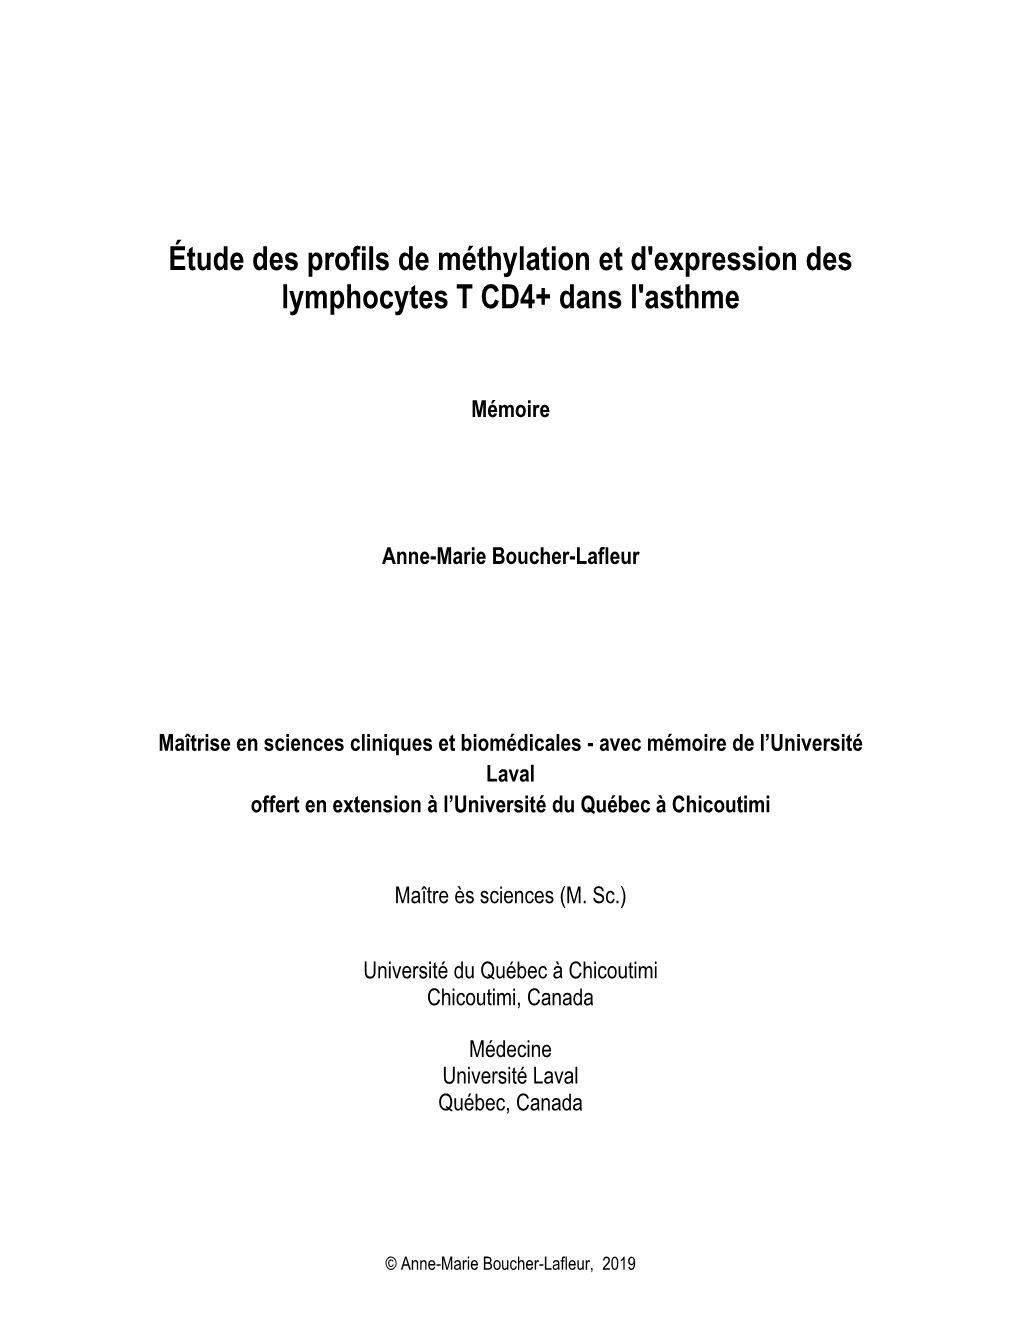 Étude Des Profils De Méthylation Et D'expression Des Lymphocytes T CD4+ Dans L'asthme